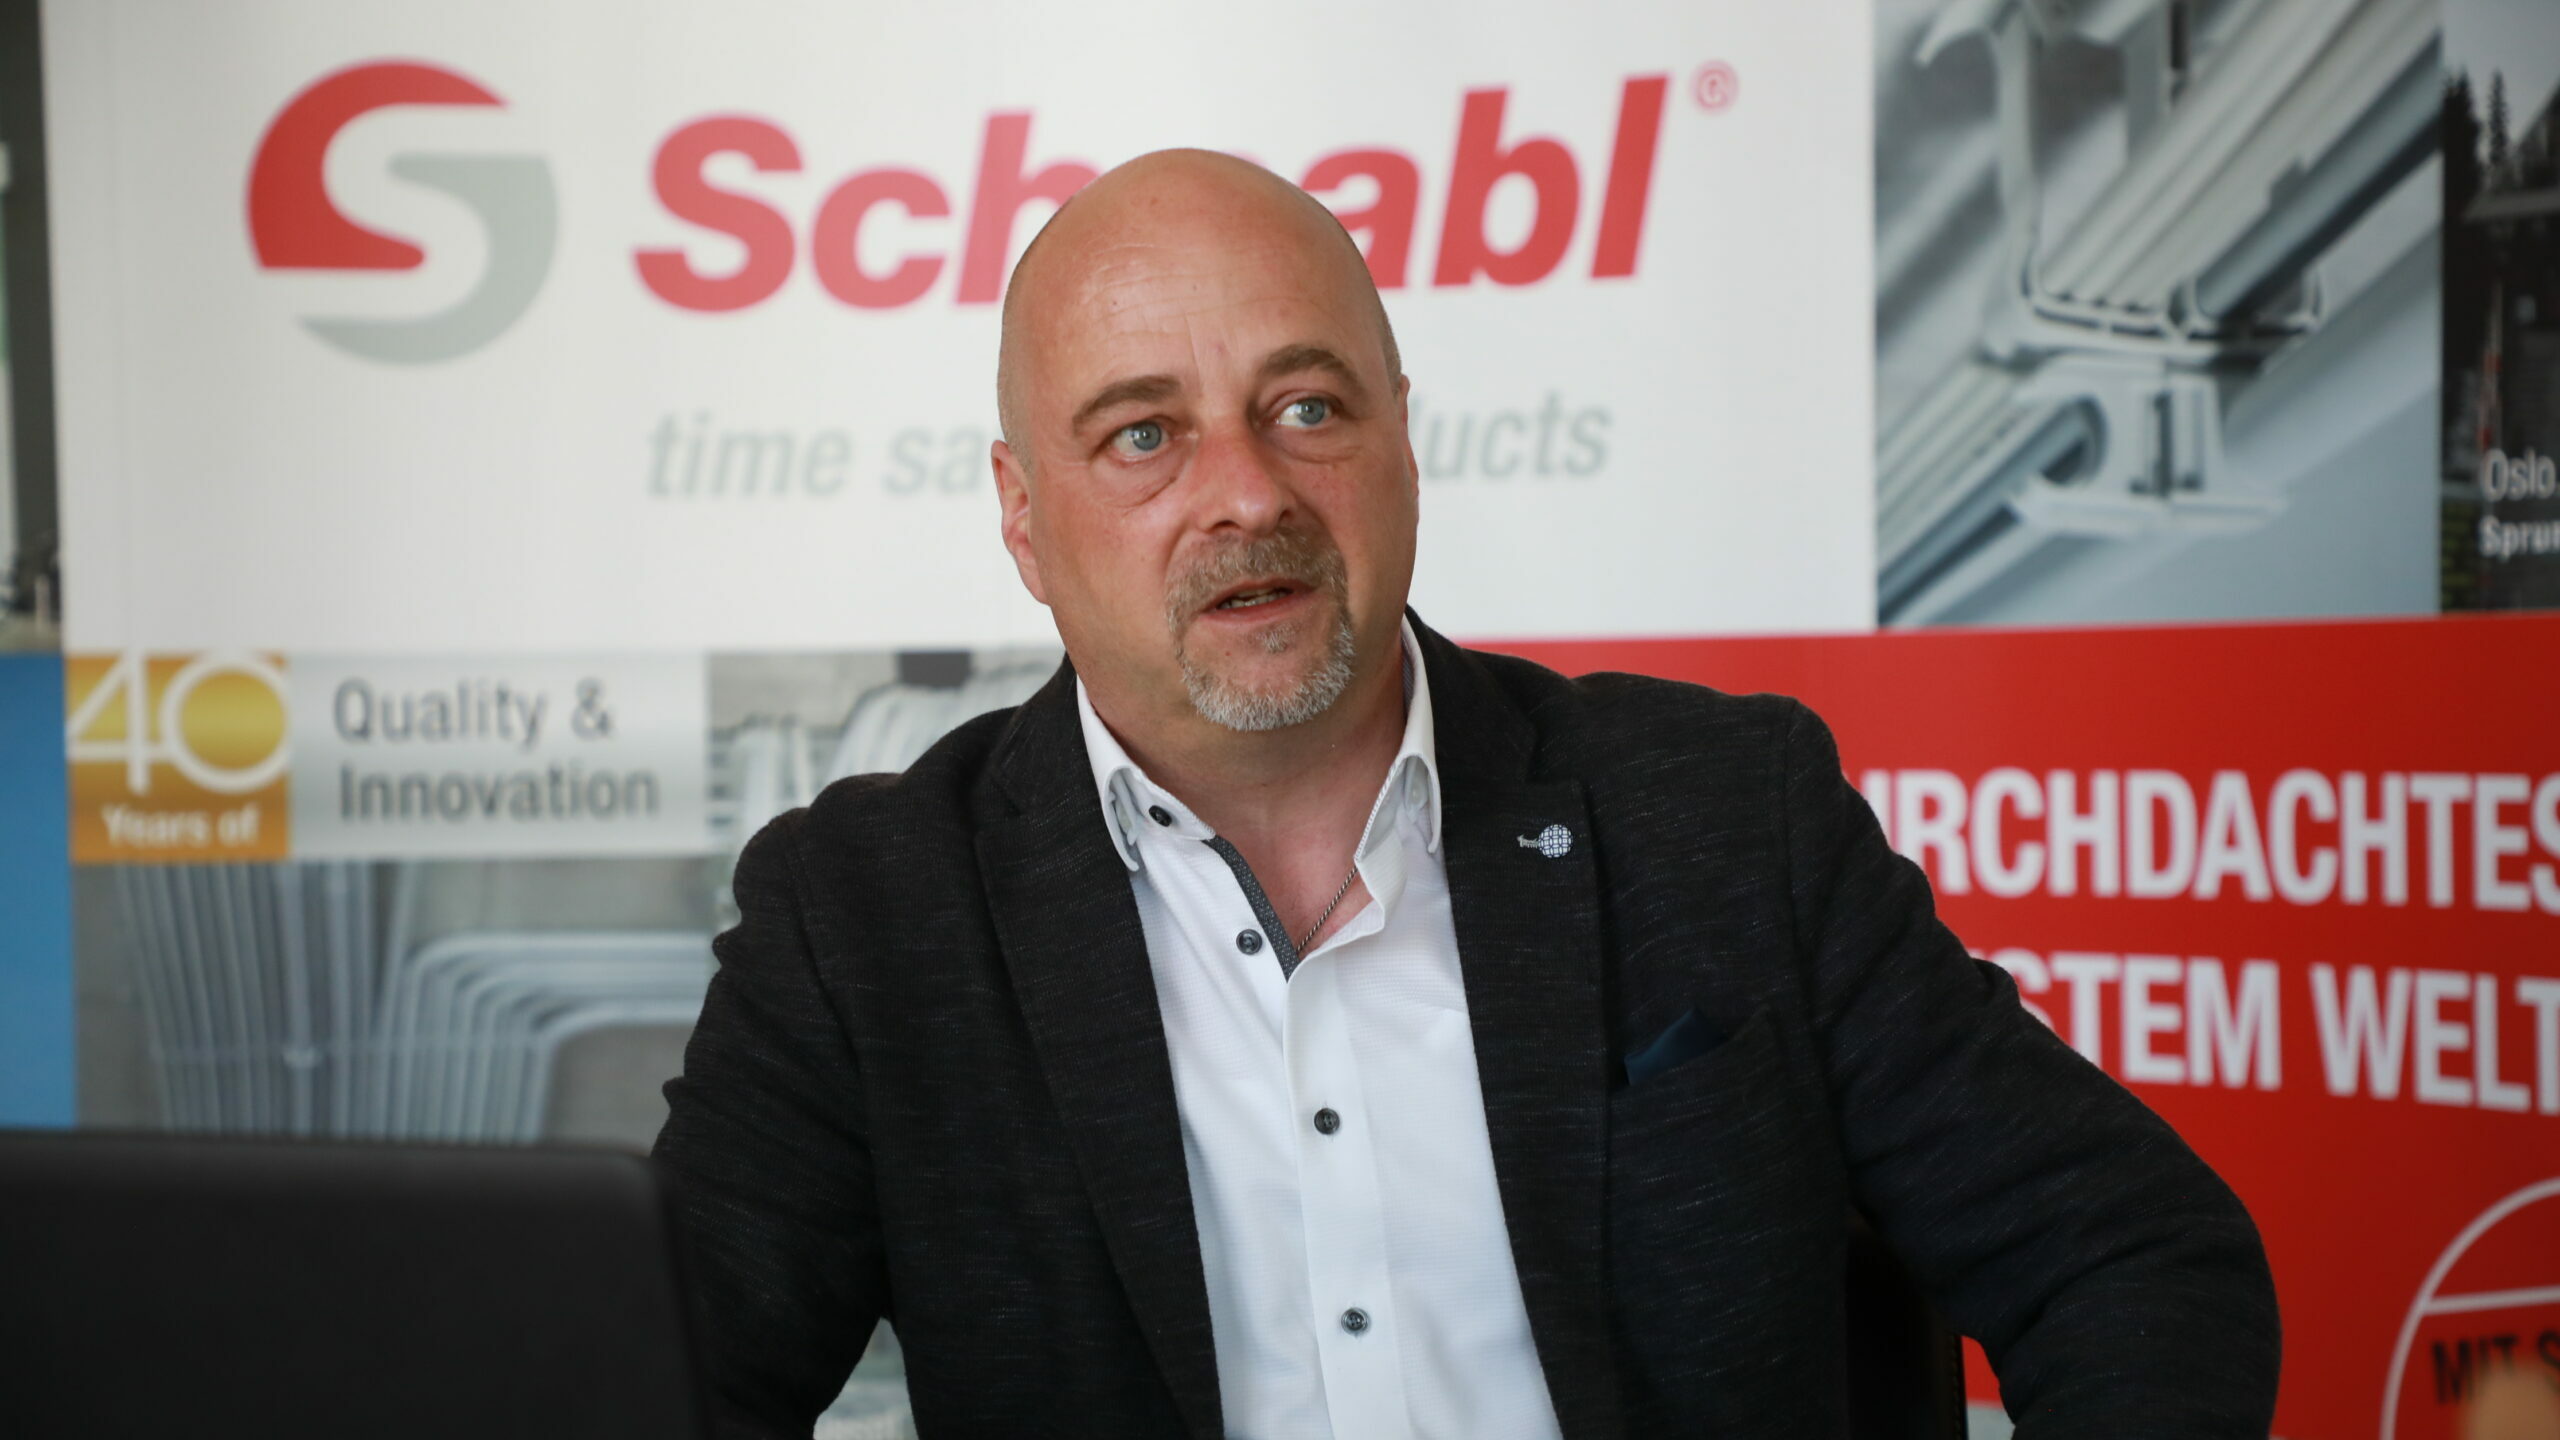  Jürgen Pichler, Verkaufsleiter bei Schnabl Stecktechnik Österreich